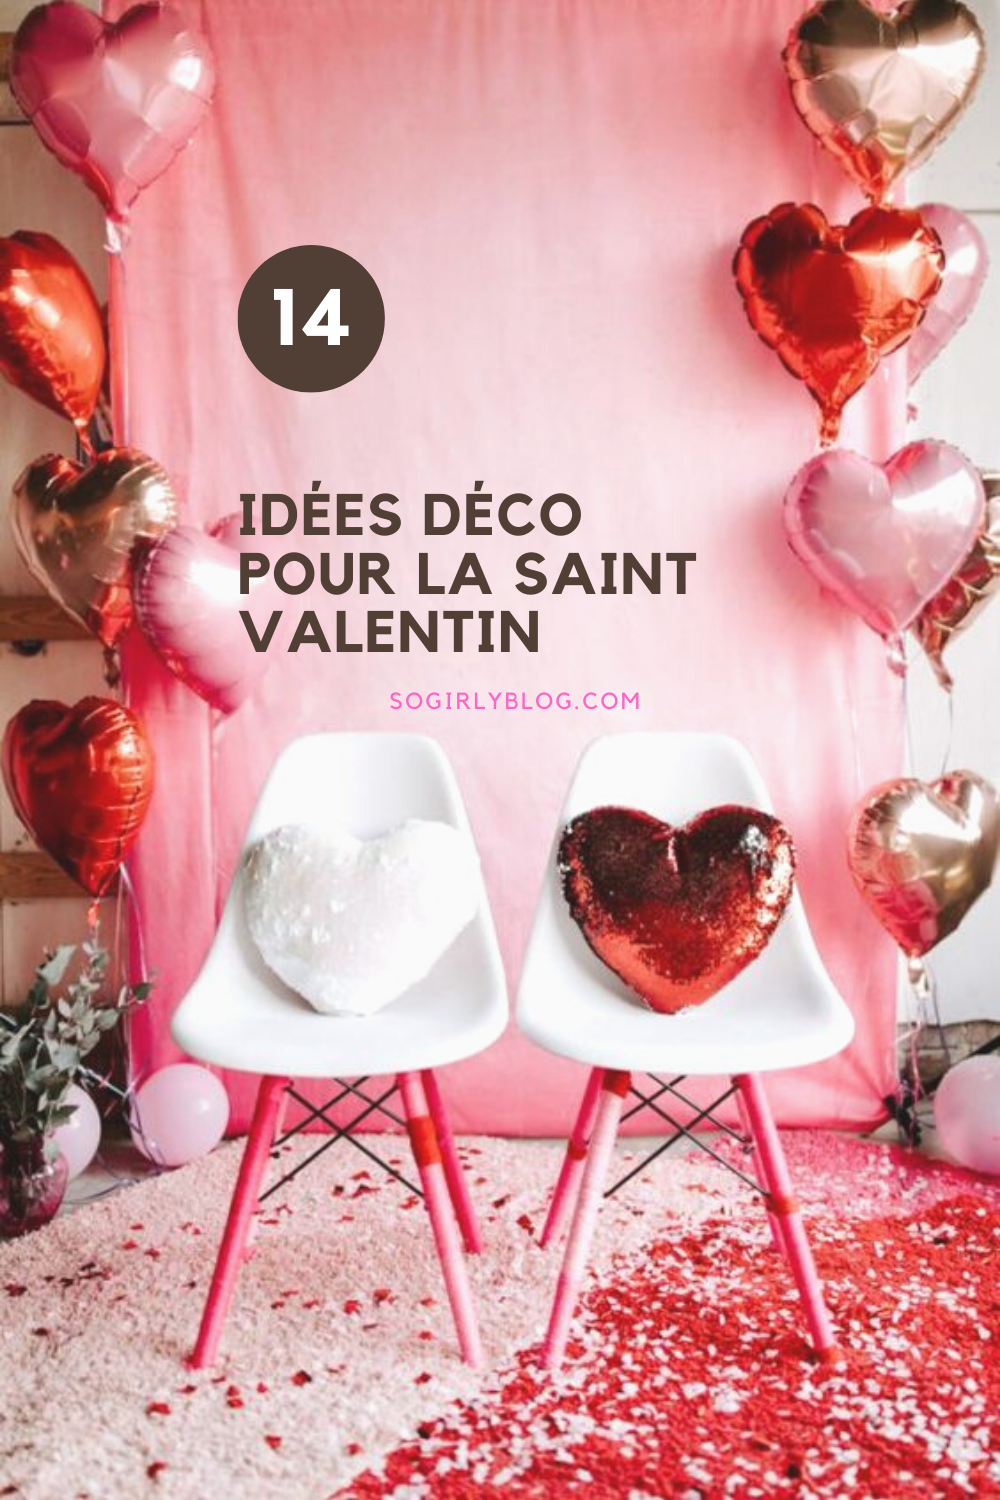 14 Idees Reperees Sur Pinterest Pour Feter La Saint Valentin Le So Girly Blog